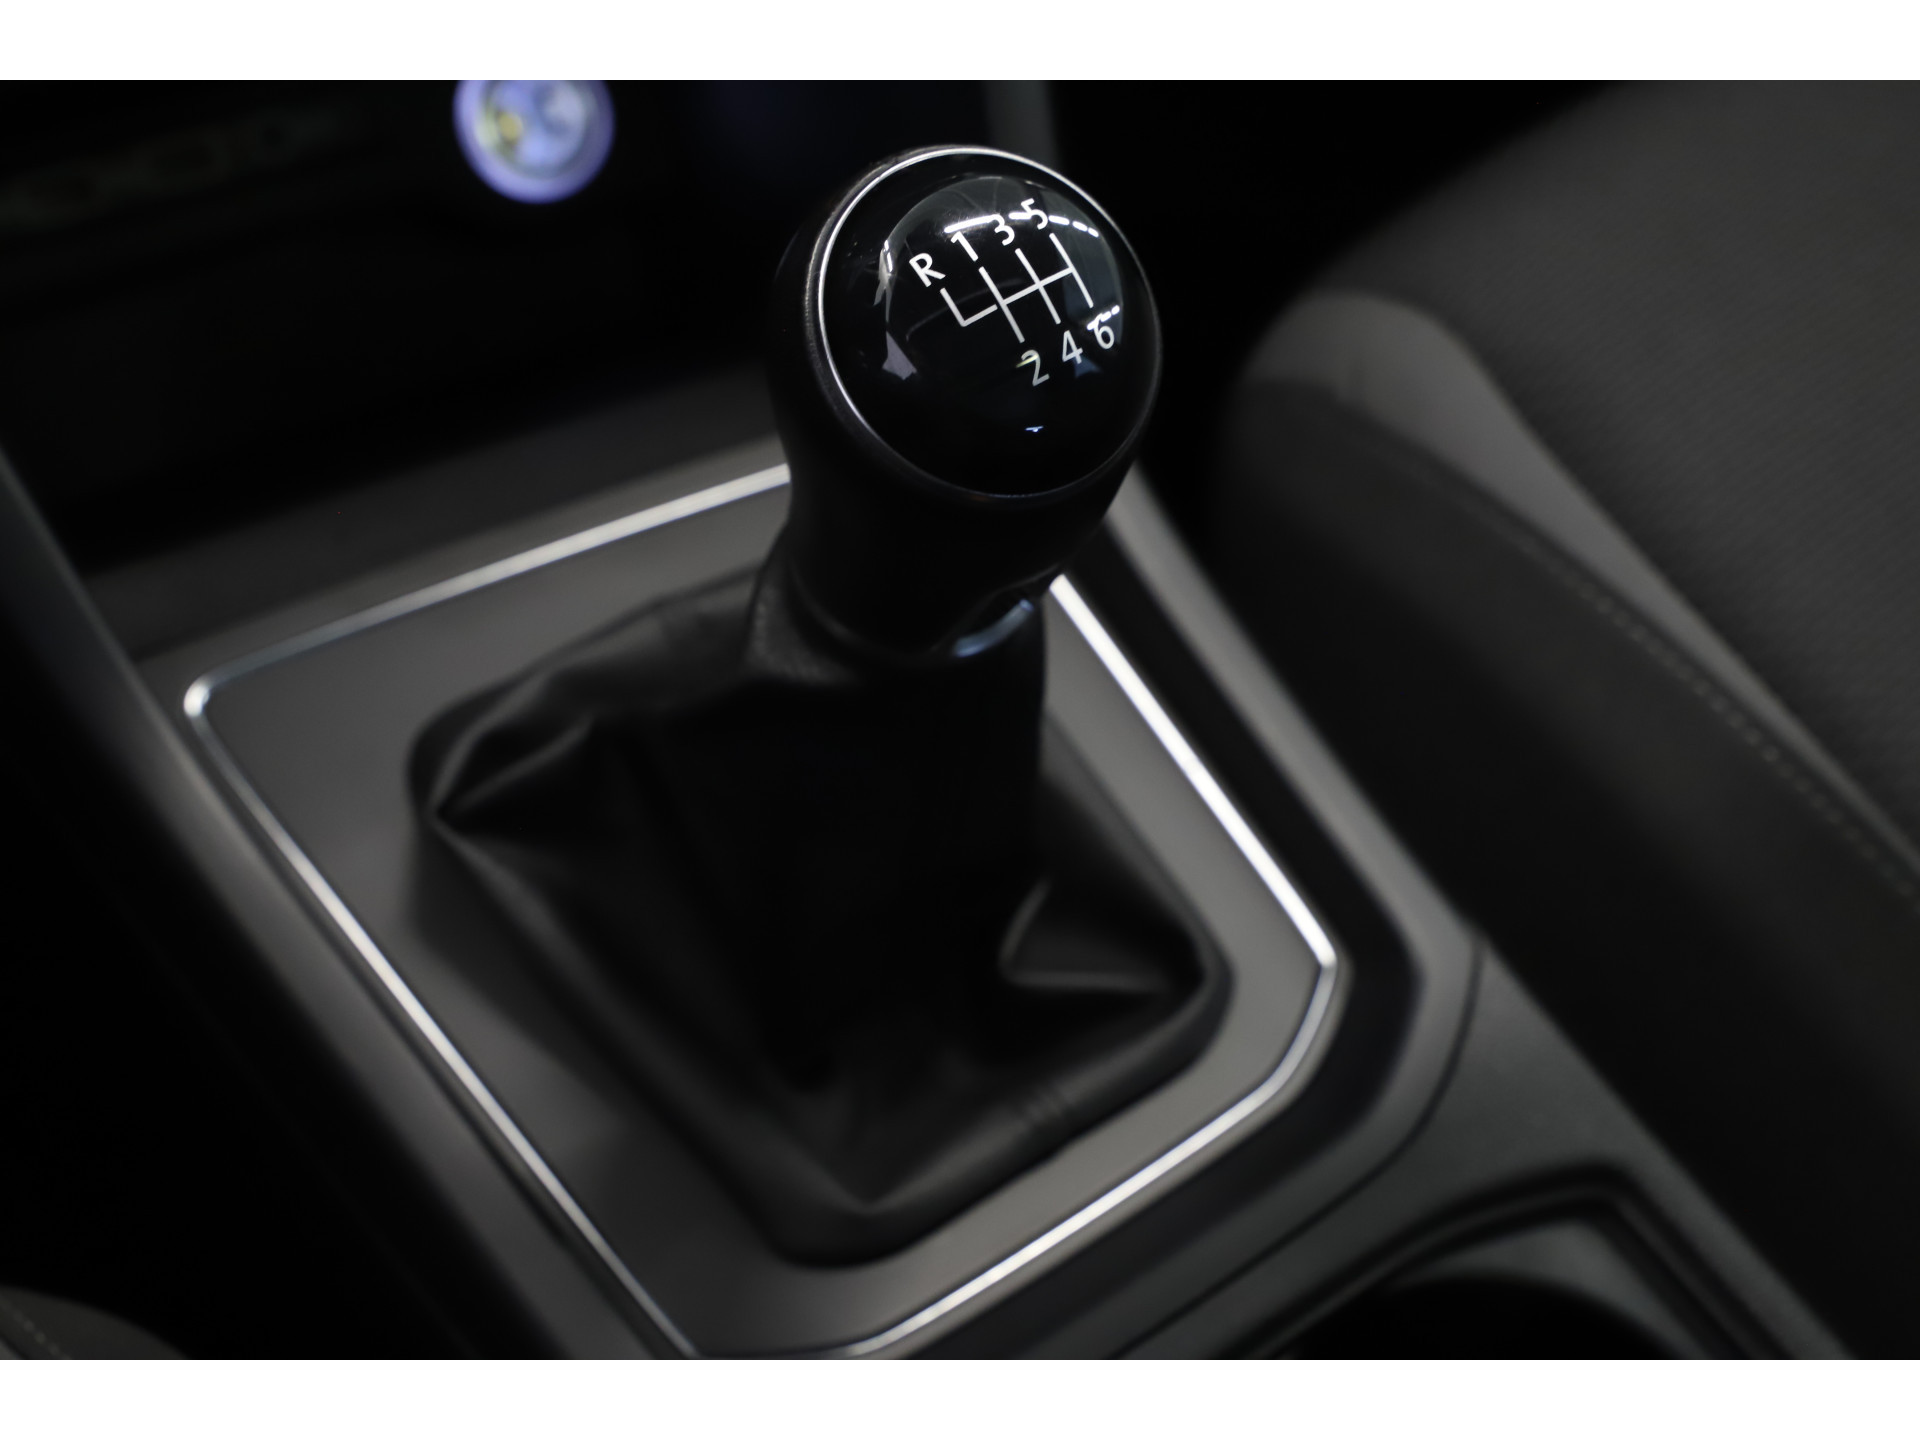 Volkswagen - Touran 1.0 TSI 115pk Comfortline 7p - 2019